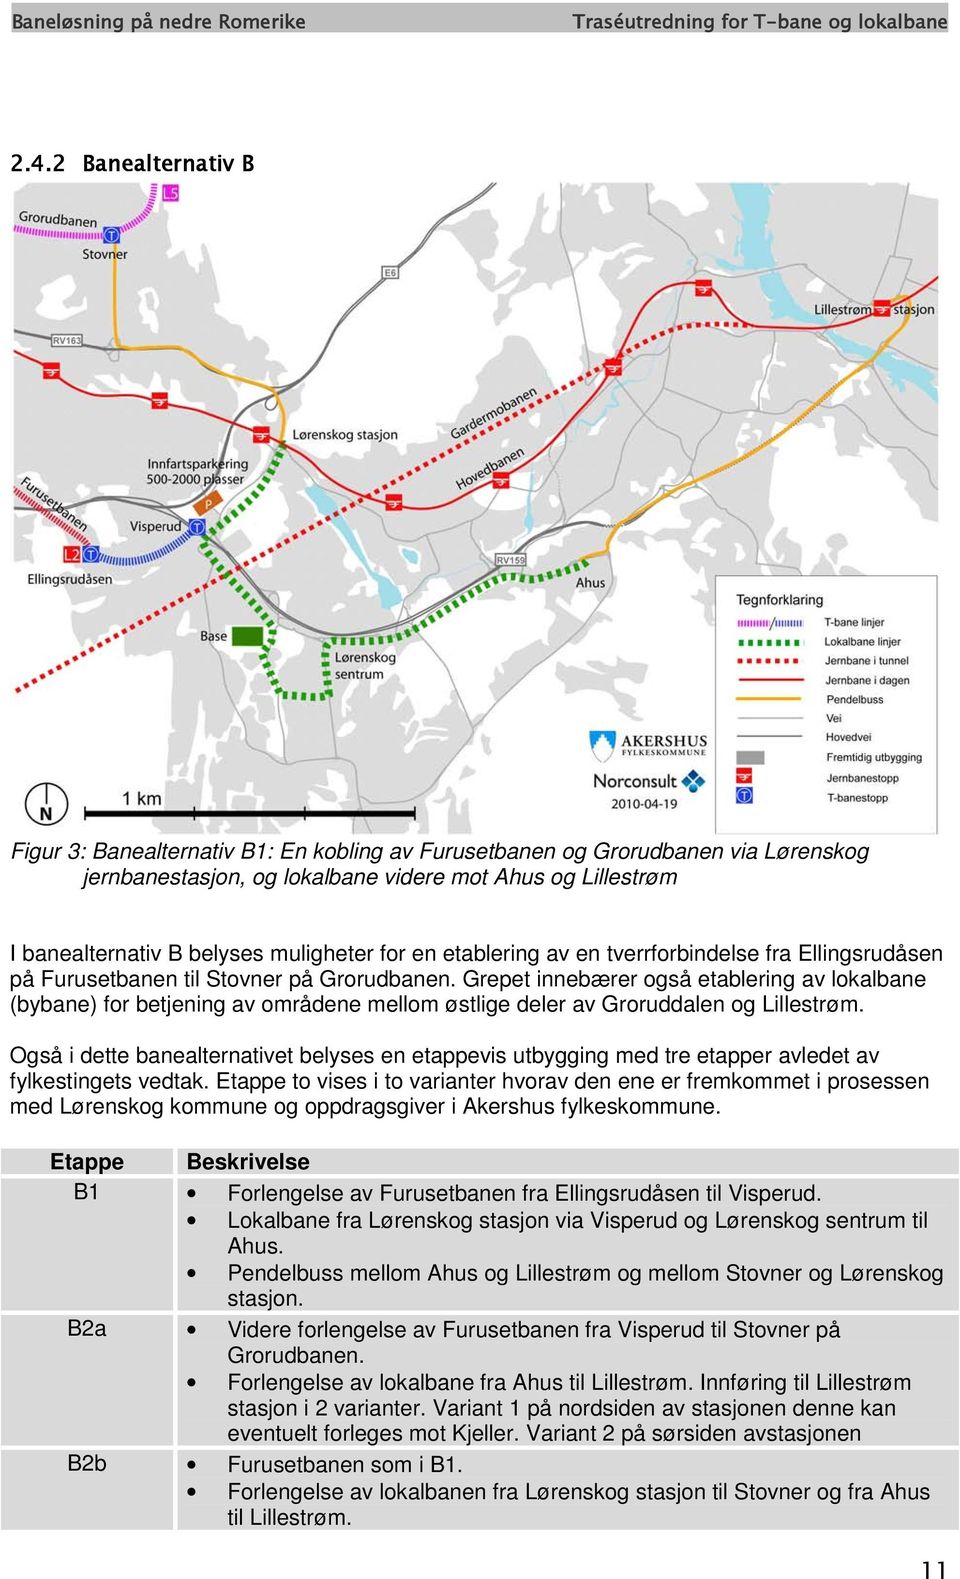 Grepet innebærer også etablering av lokalbane (bybane) for betjening av områdene mellom østlige deler av Groruddalen og Lillestrøm.